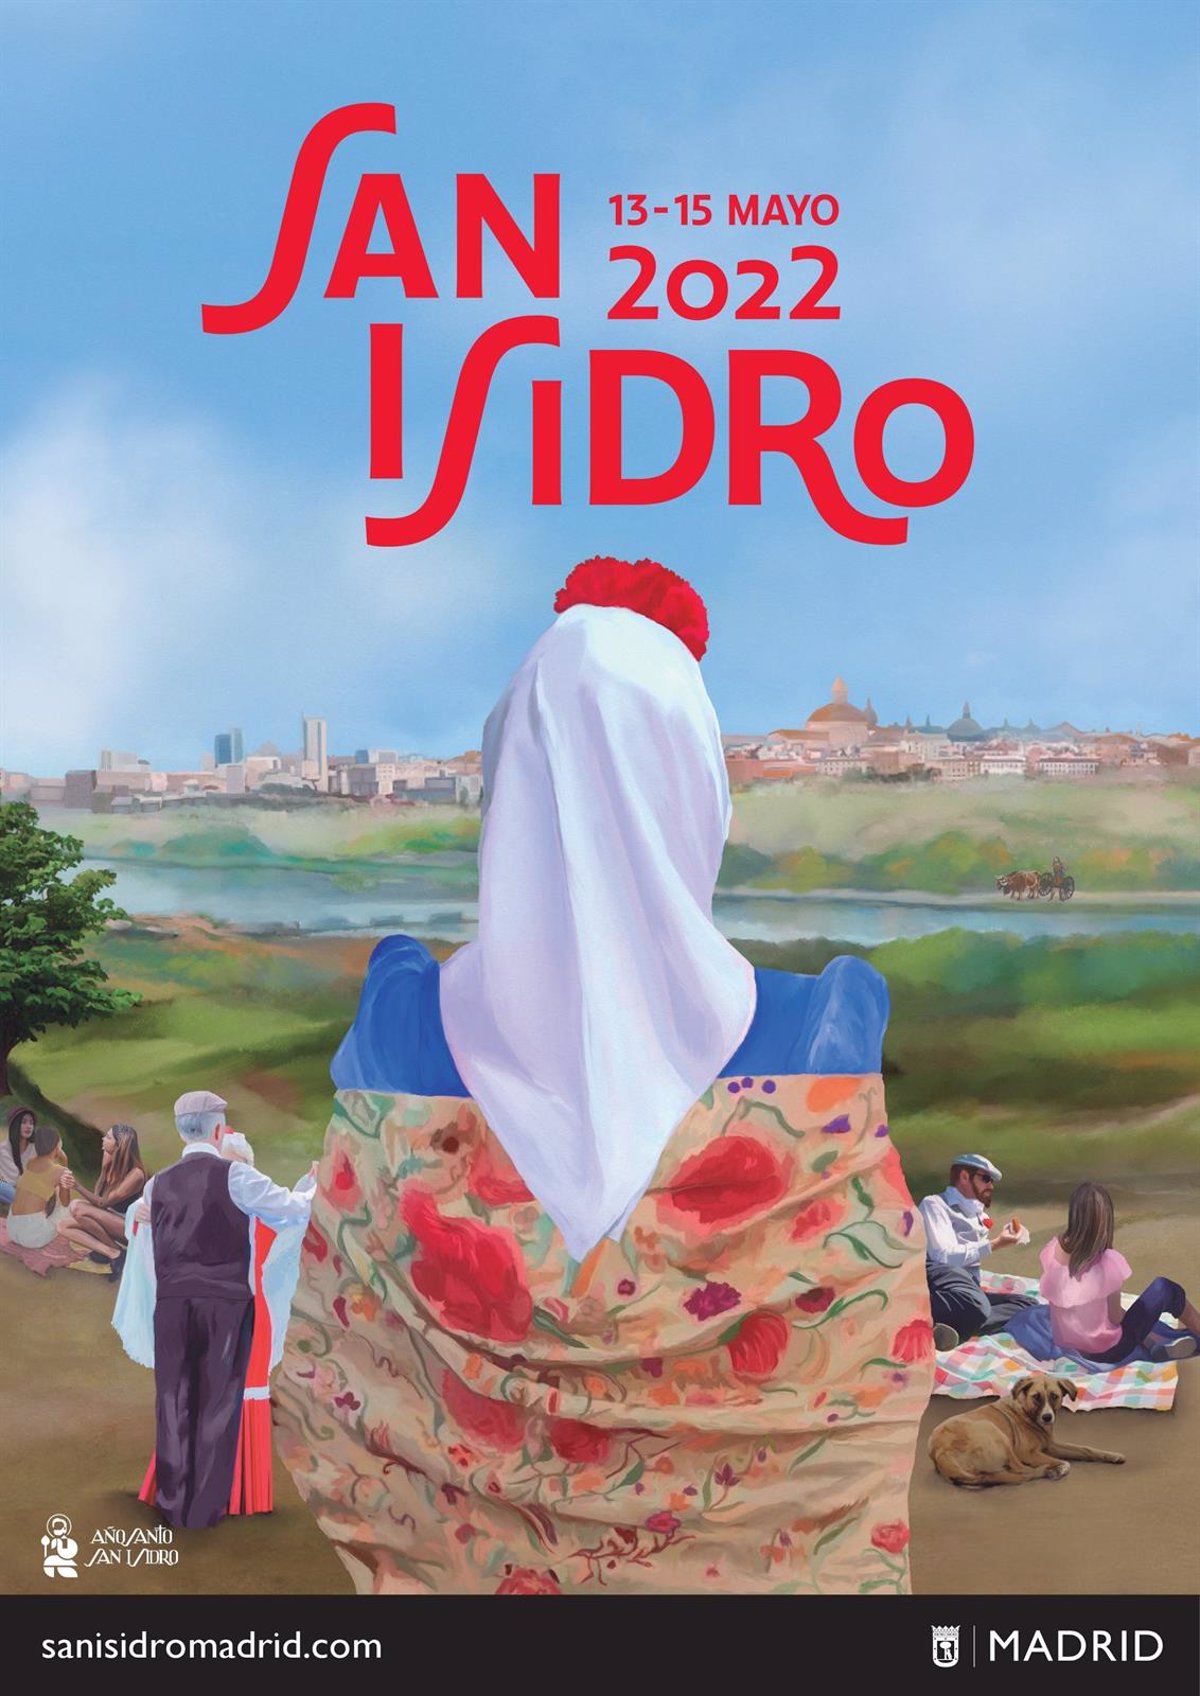 La pradera de Goya inspira el cartel de San Isidro 2022